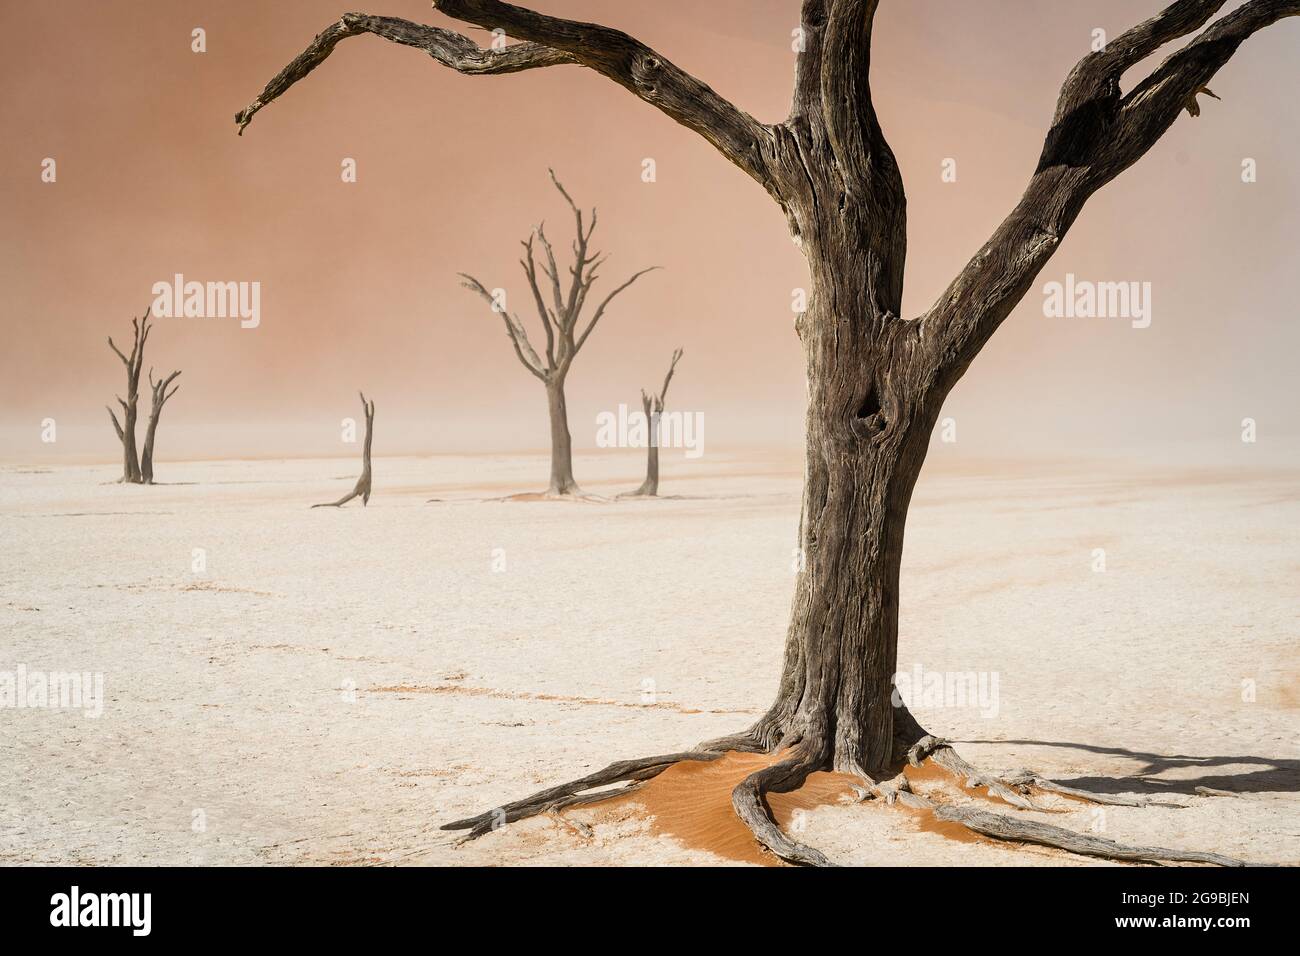 Arbres camelthorn morts à Deadvlei dans le désert du Namib, parc national Namib-Naukluft, Namibie, Afrique. Banque D'Images